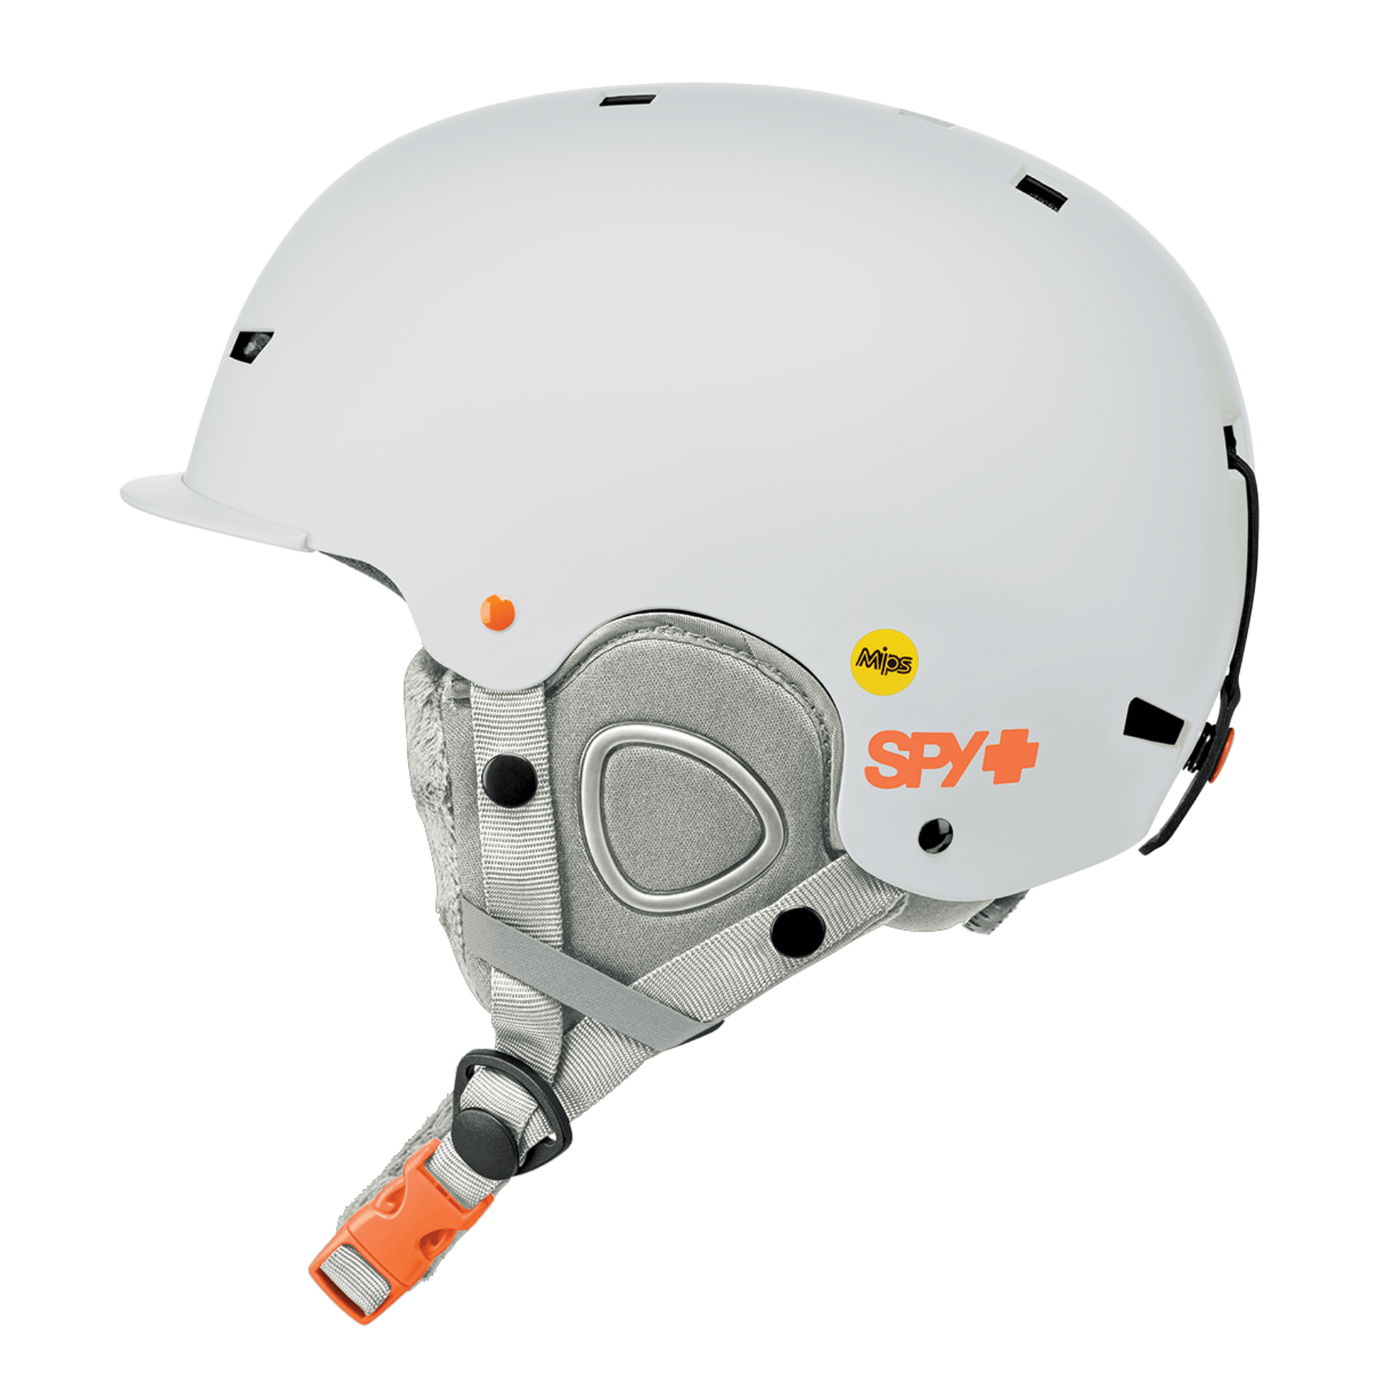 Mips helmet for snowboarding